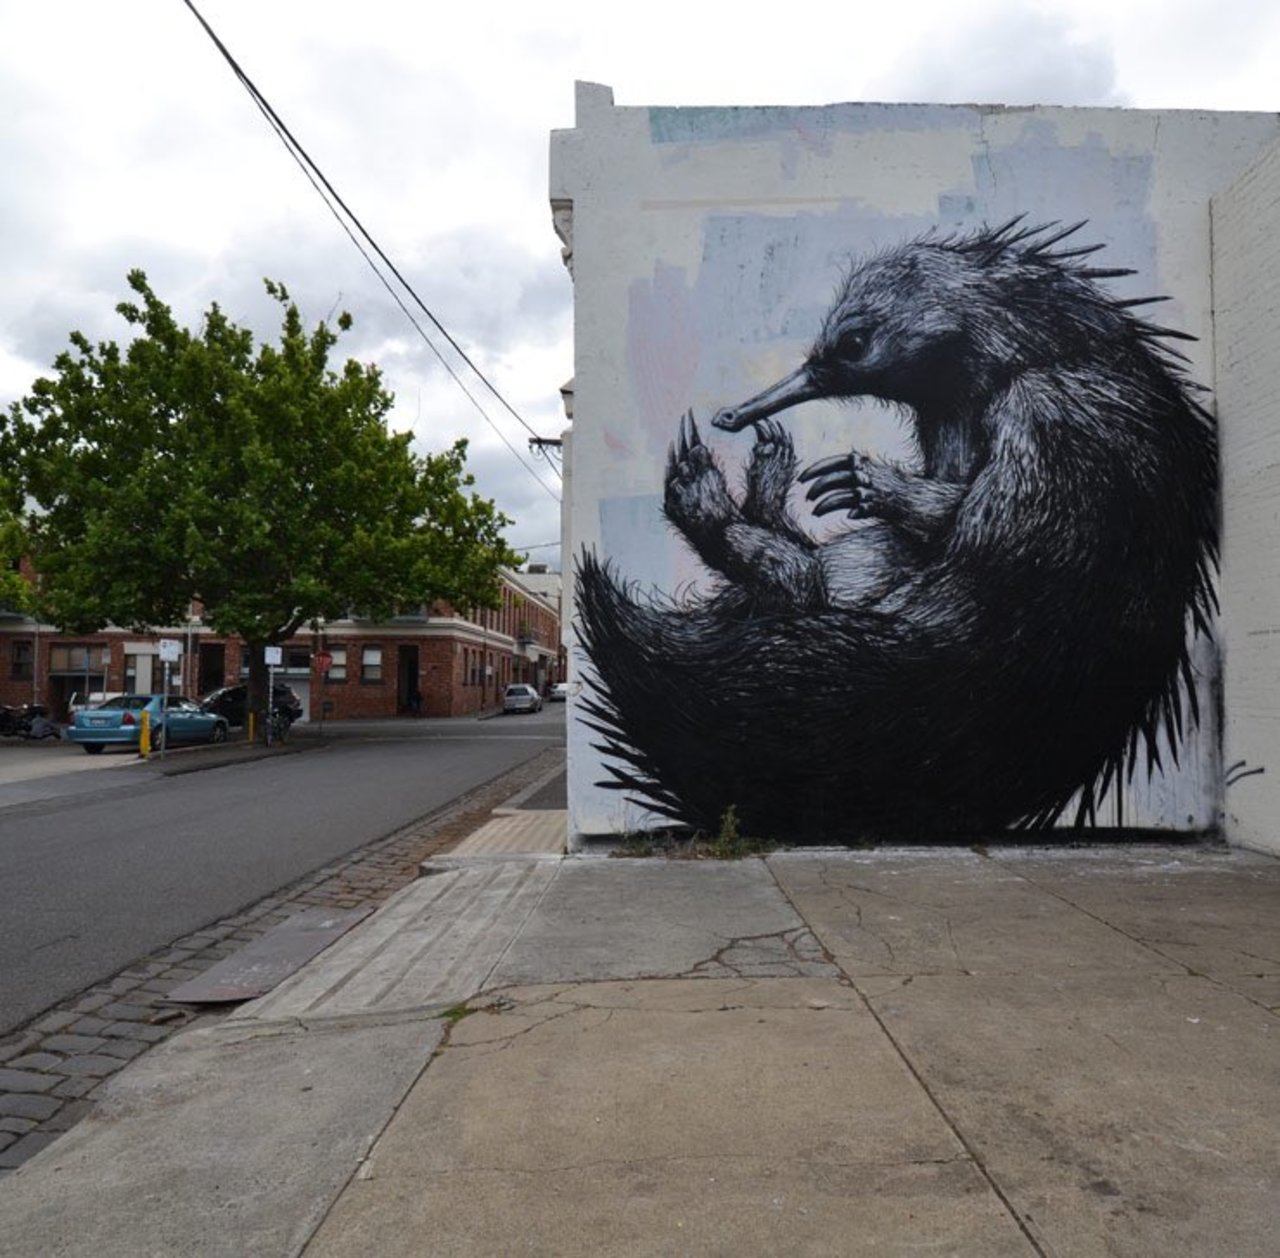 #mural by ROA, #Melbourne #Australia #Streetart #urbanart #graffiti #art https://t.co/pG7OakfqtZ